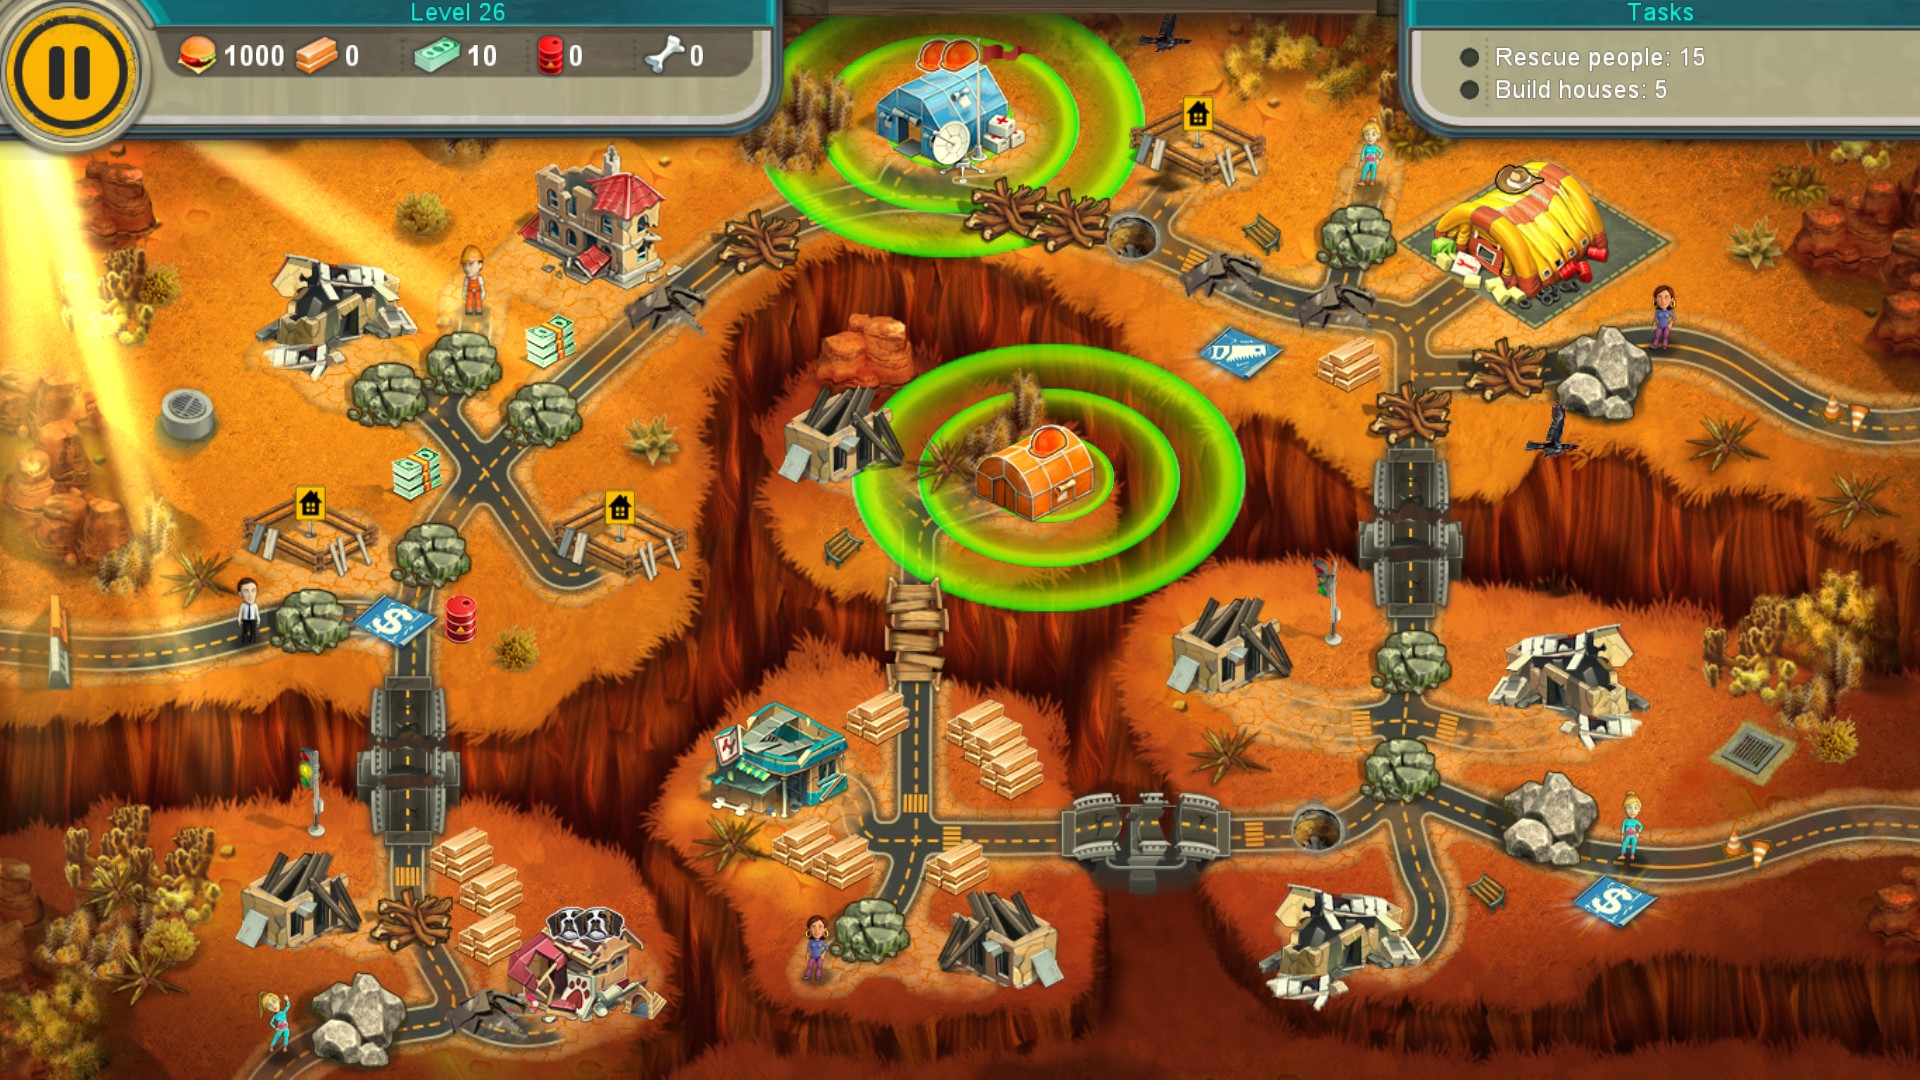 Скриншот из игры Rescue Team 6 Collector